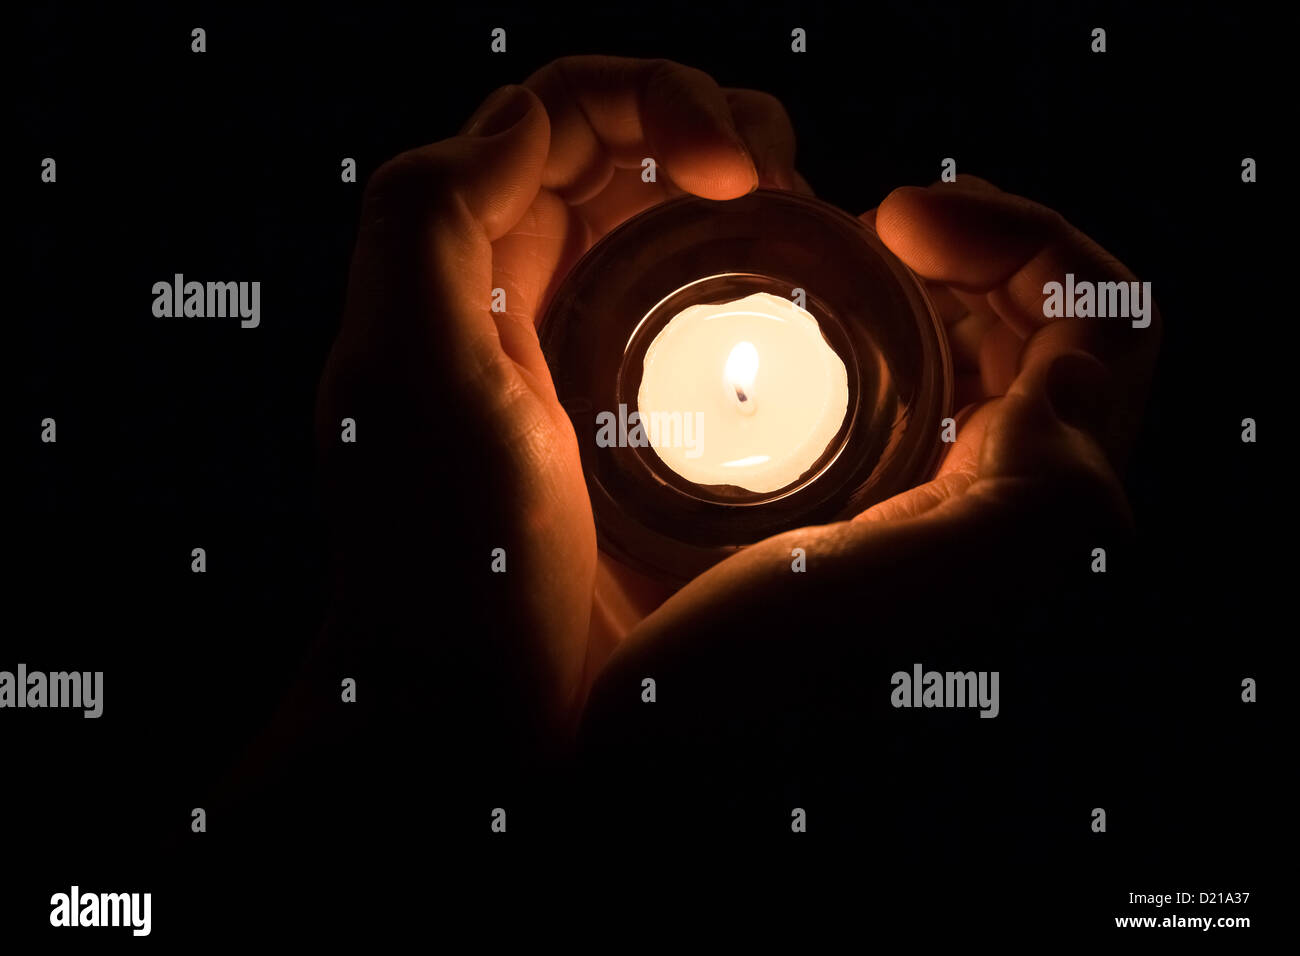 Hände in der Form eines Herzens um eine brennende Kerze. Stockfoto